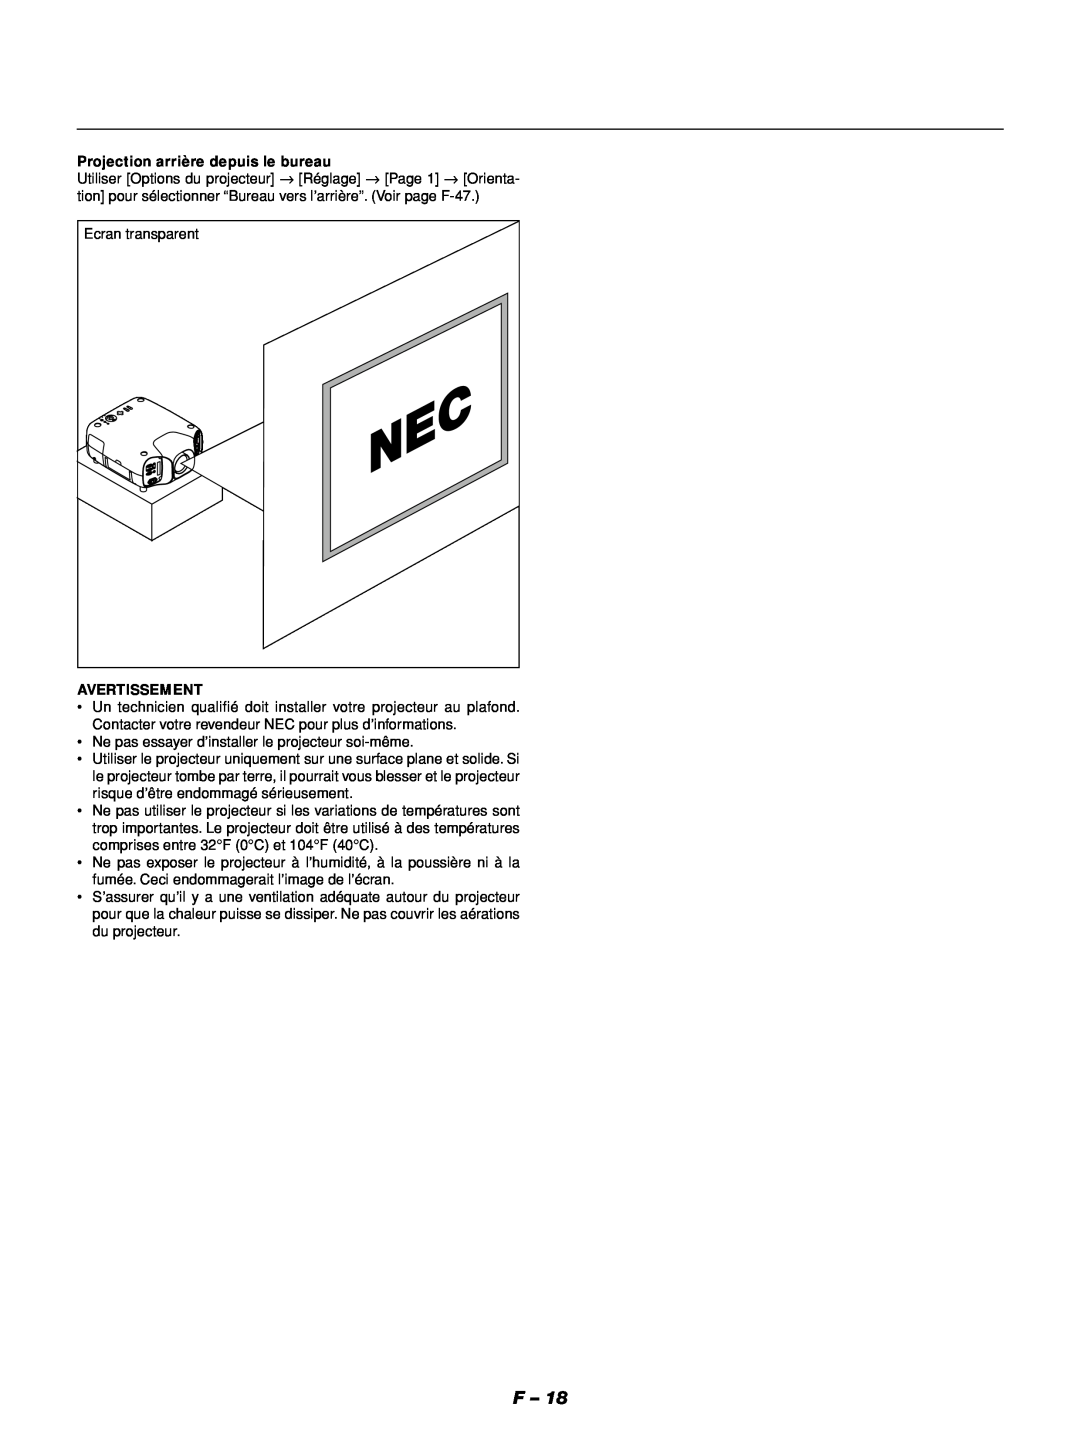 NEC GT1150 manuel dutilisation Projection arrière depuis le bureau, Avertissement 